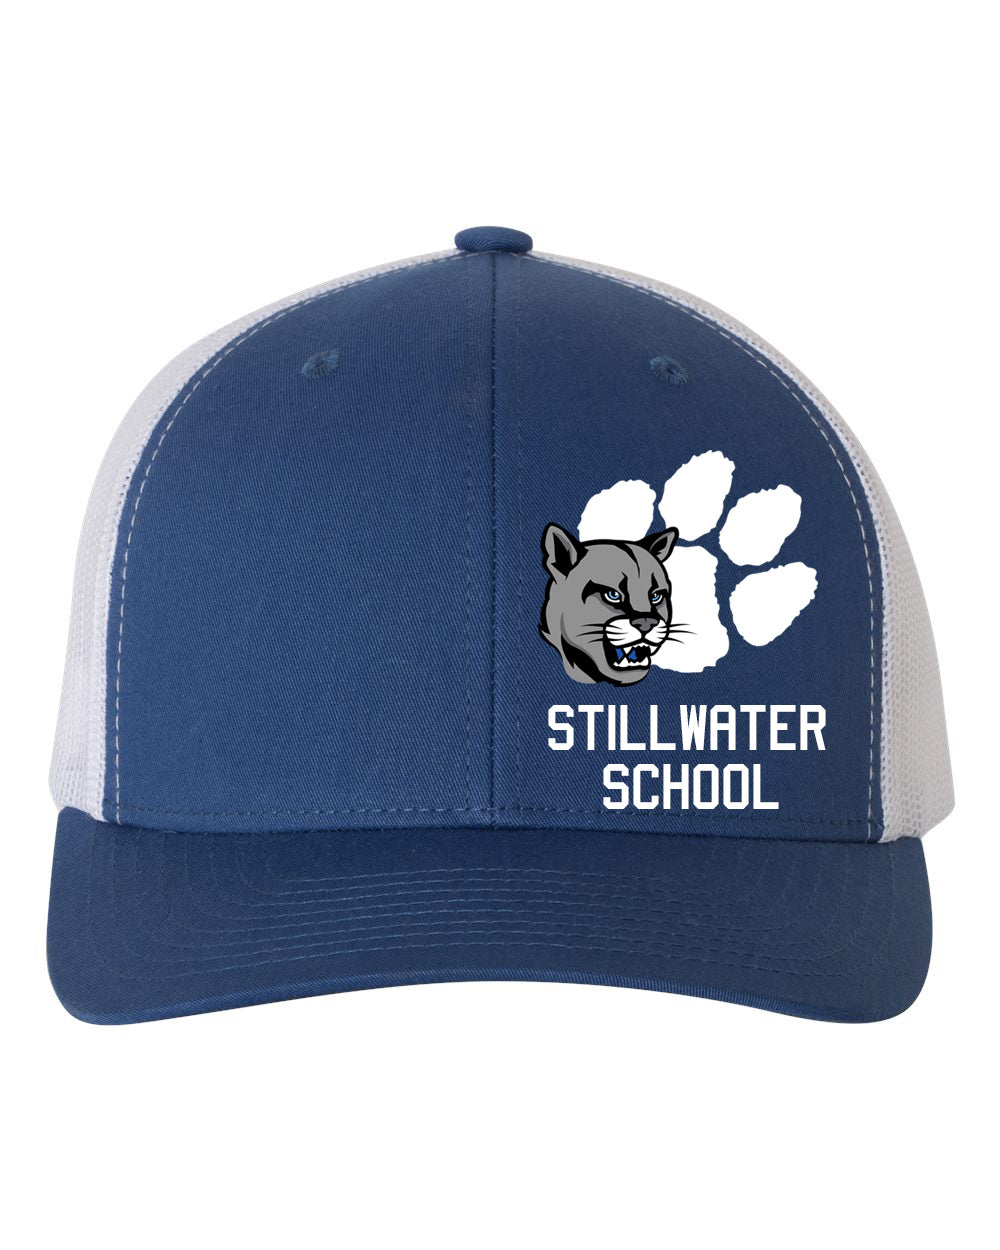 Stillwater Design 8 Trucker Hat